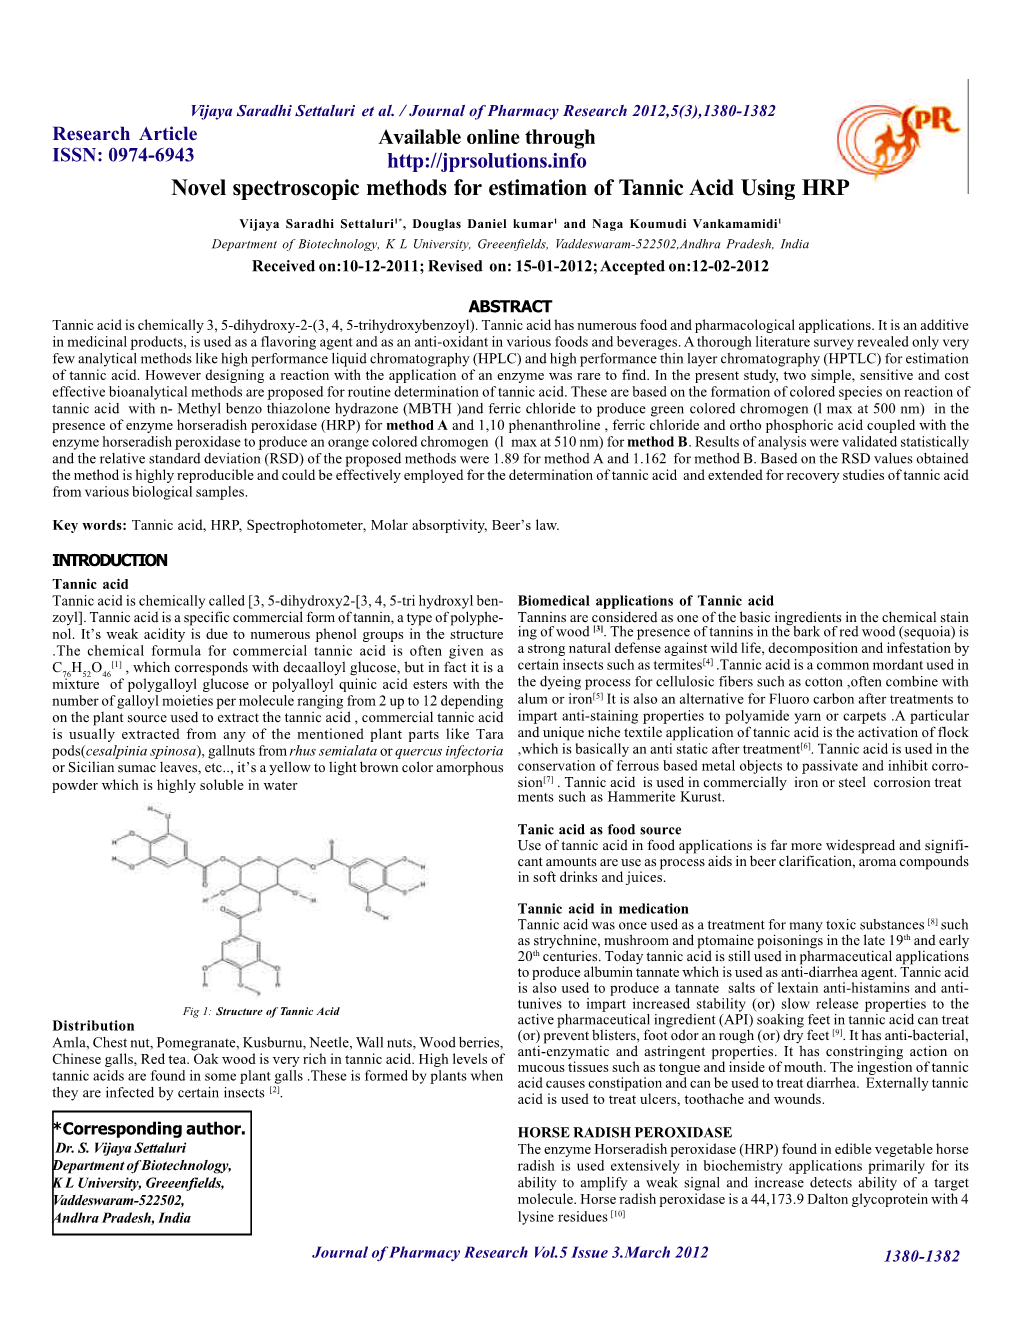 Novel Spectroscopic Methods for Estimation of Tannic Acid Using HRP